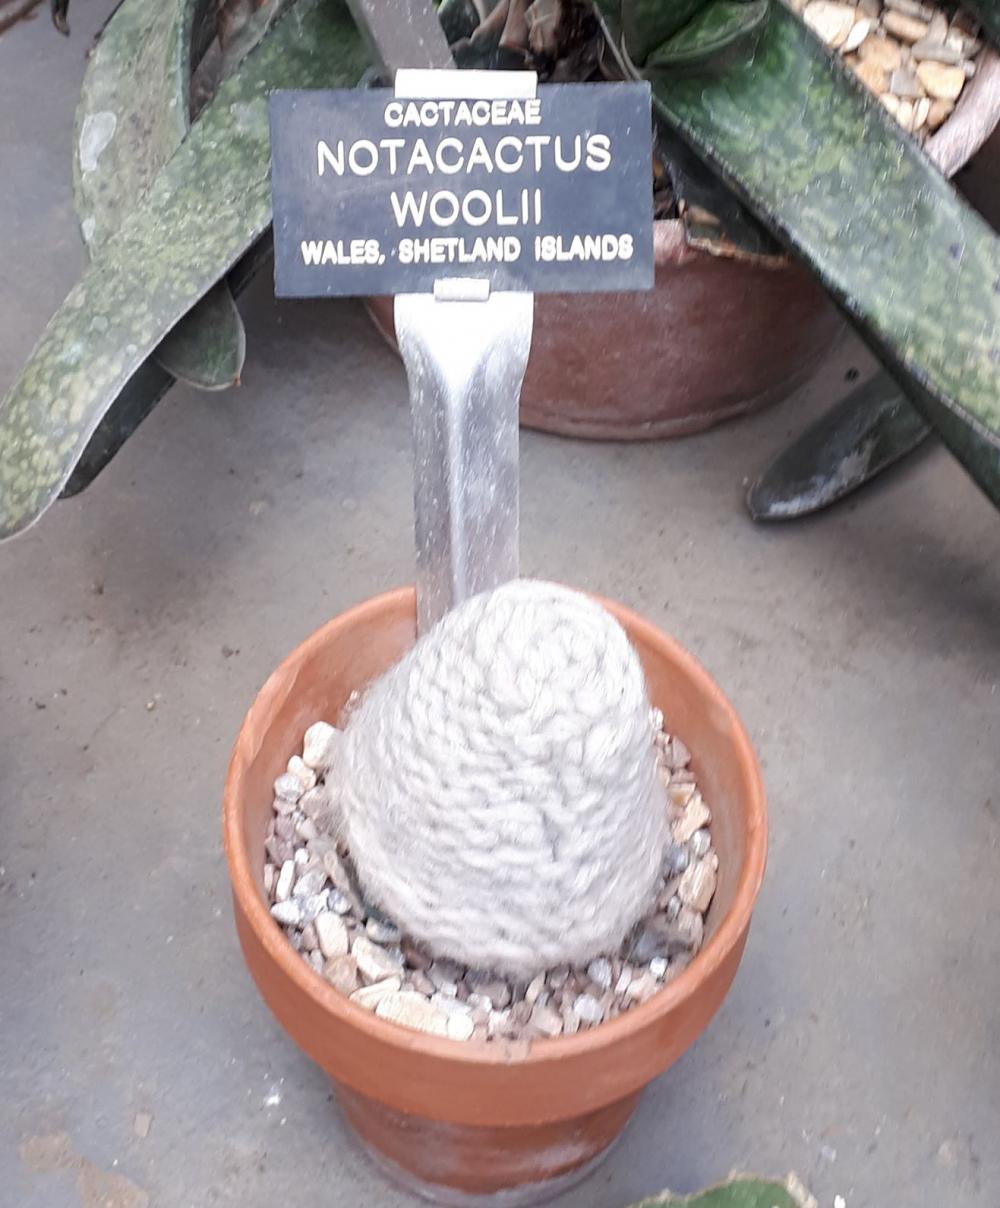 Notocactus woollii